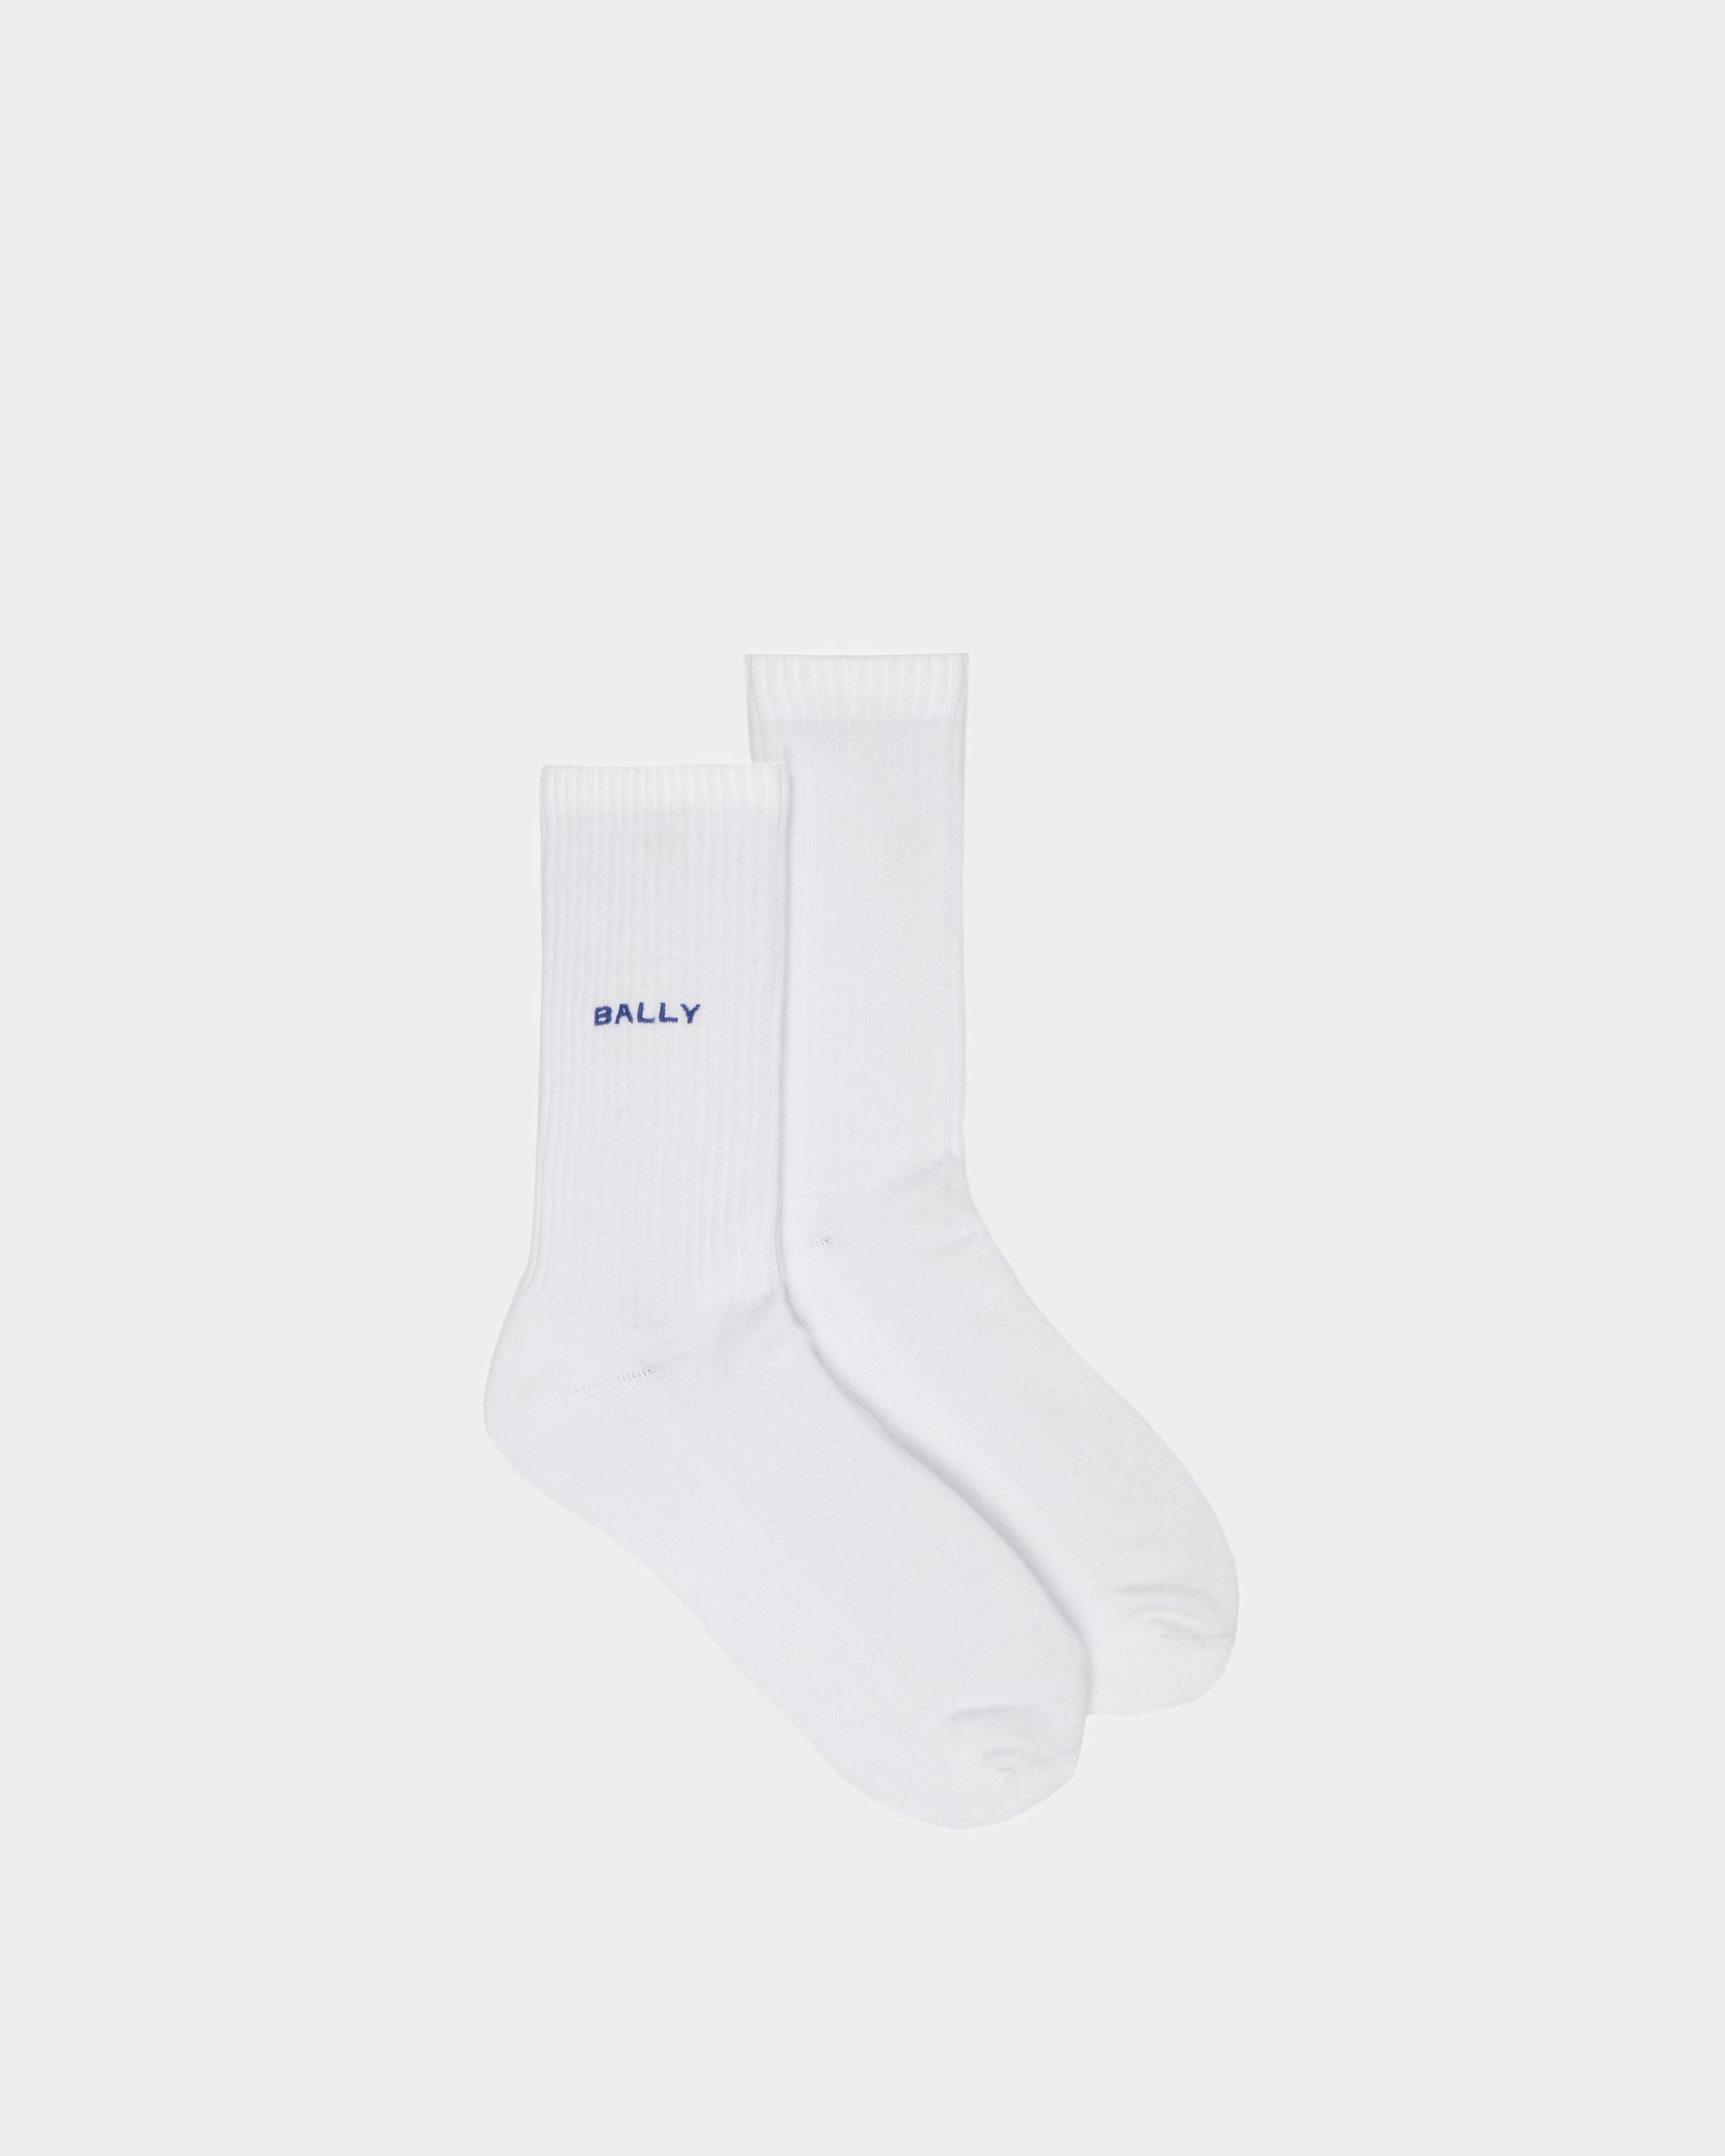 Luxury Cotton Socks for Men: Ribbed, Polka Dot Socks | Bally